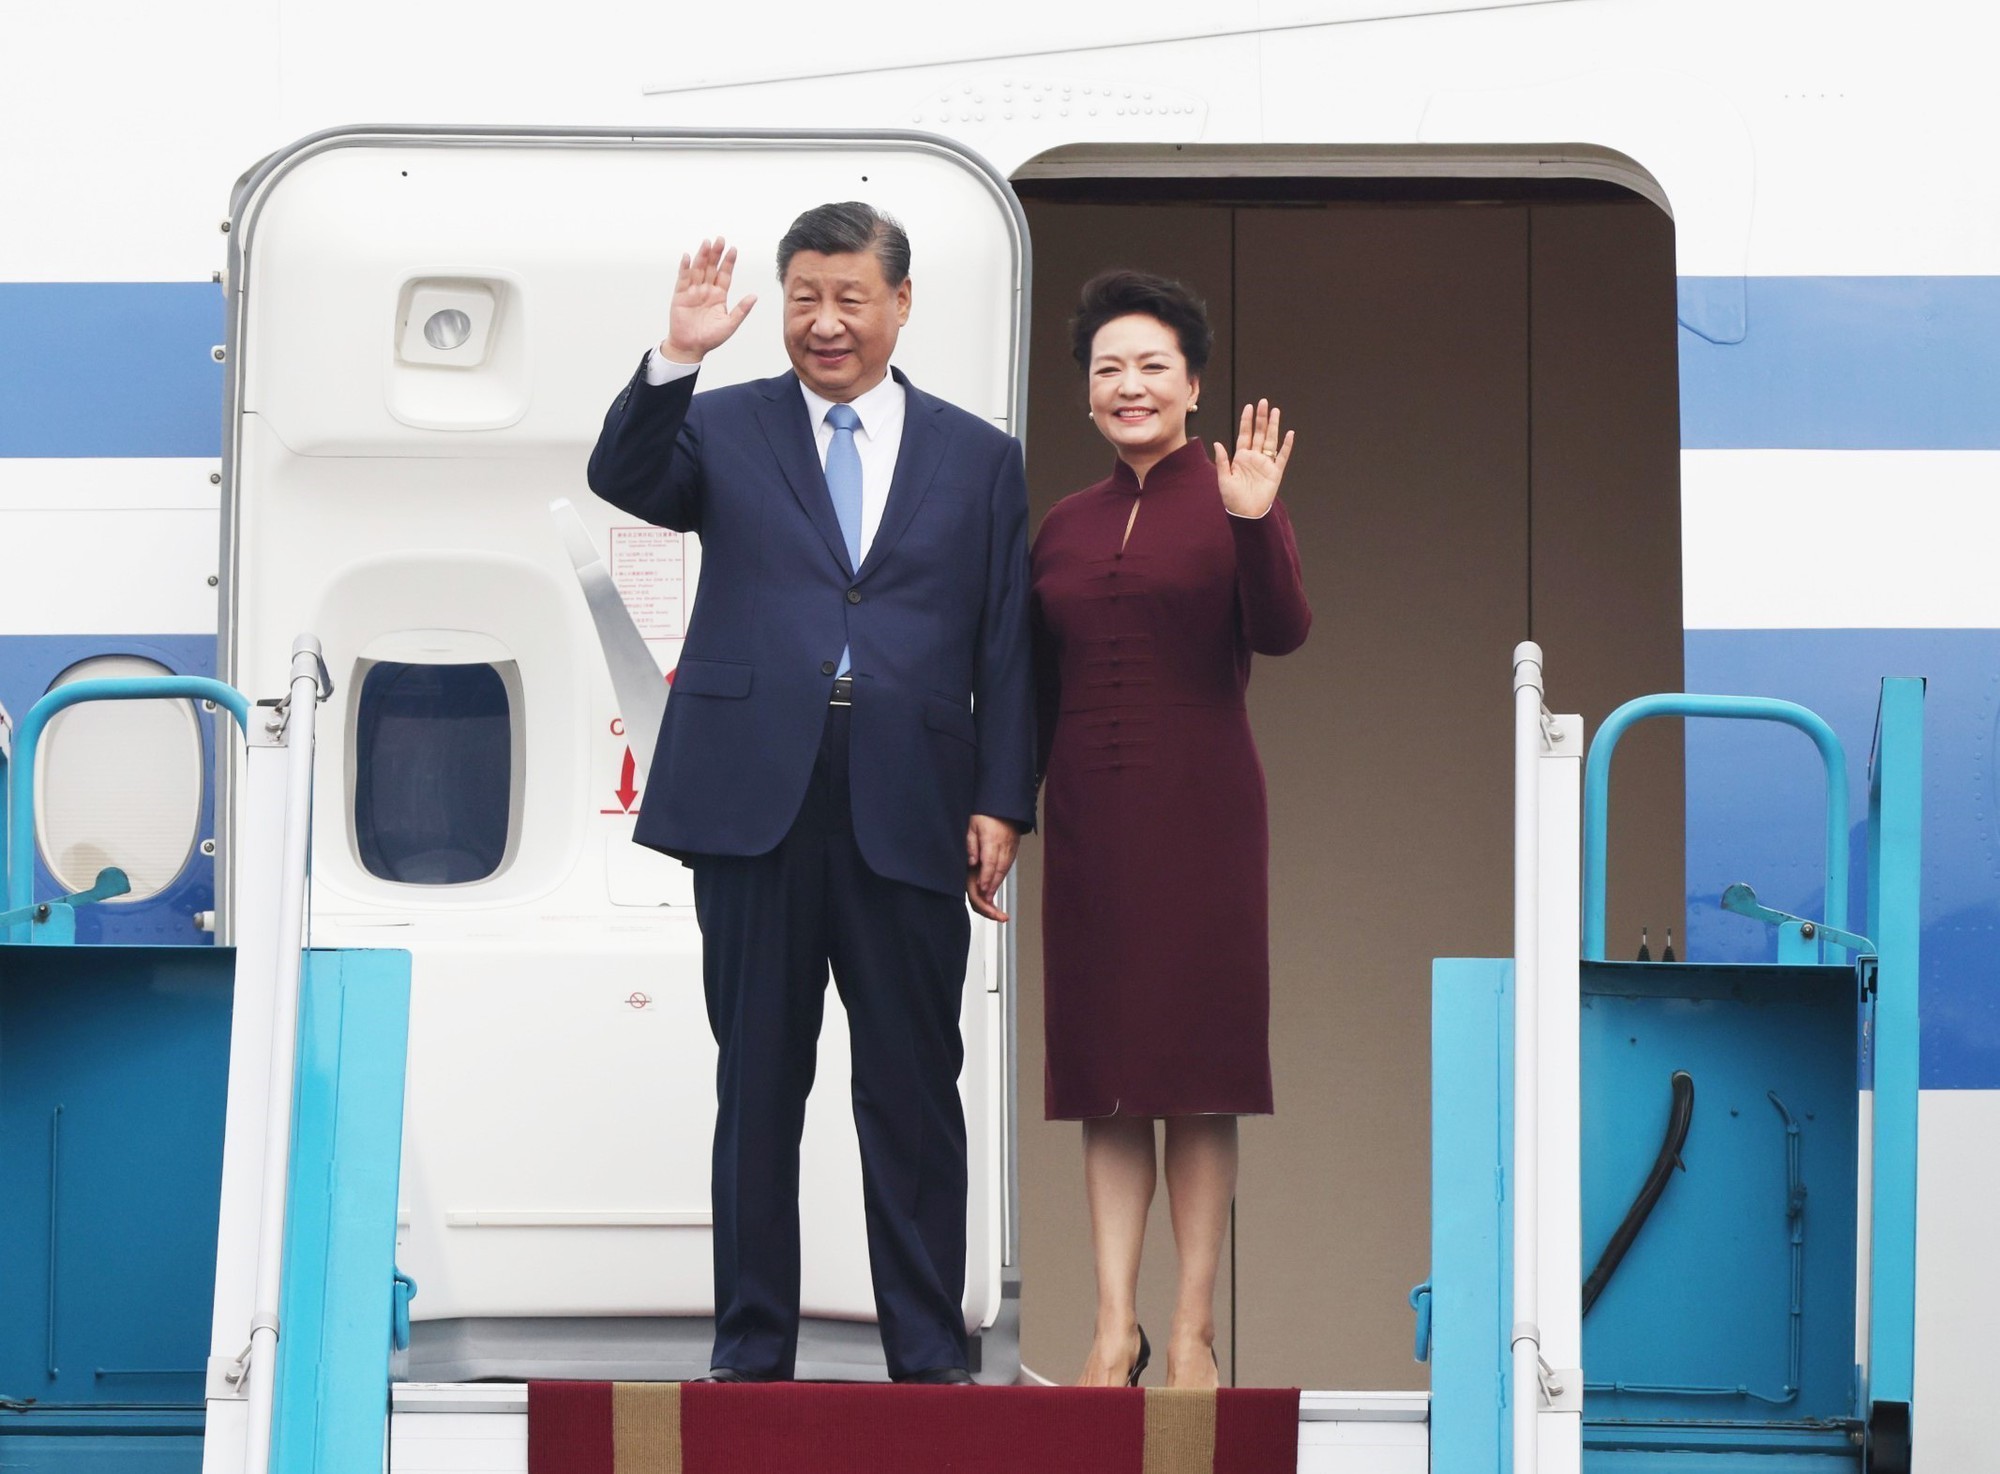 Tổng Bí thư, Chủ tịch nước Trung Quốc Tập Cận Bình đến Hà Nội, bắt đầu chuyến thăm cấp Nhà nước tới Việt Nam